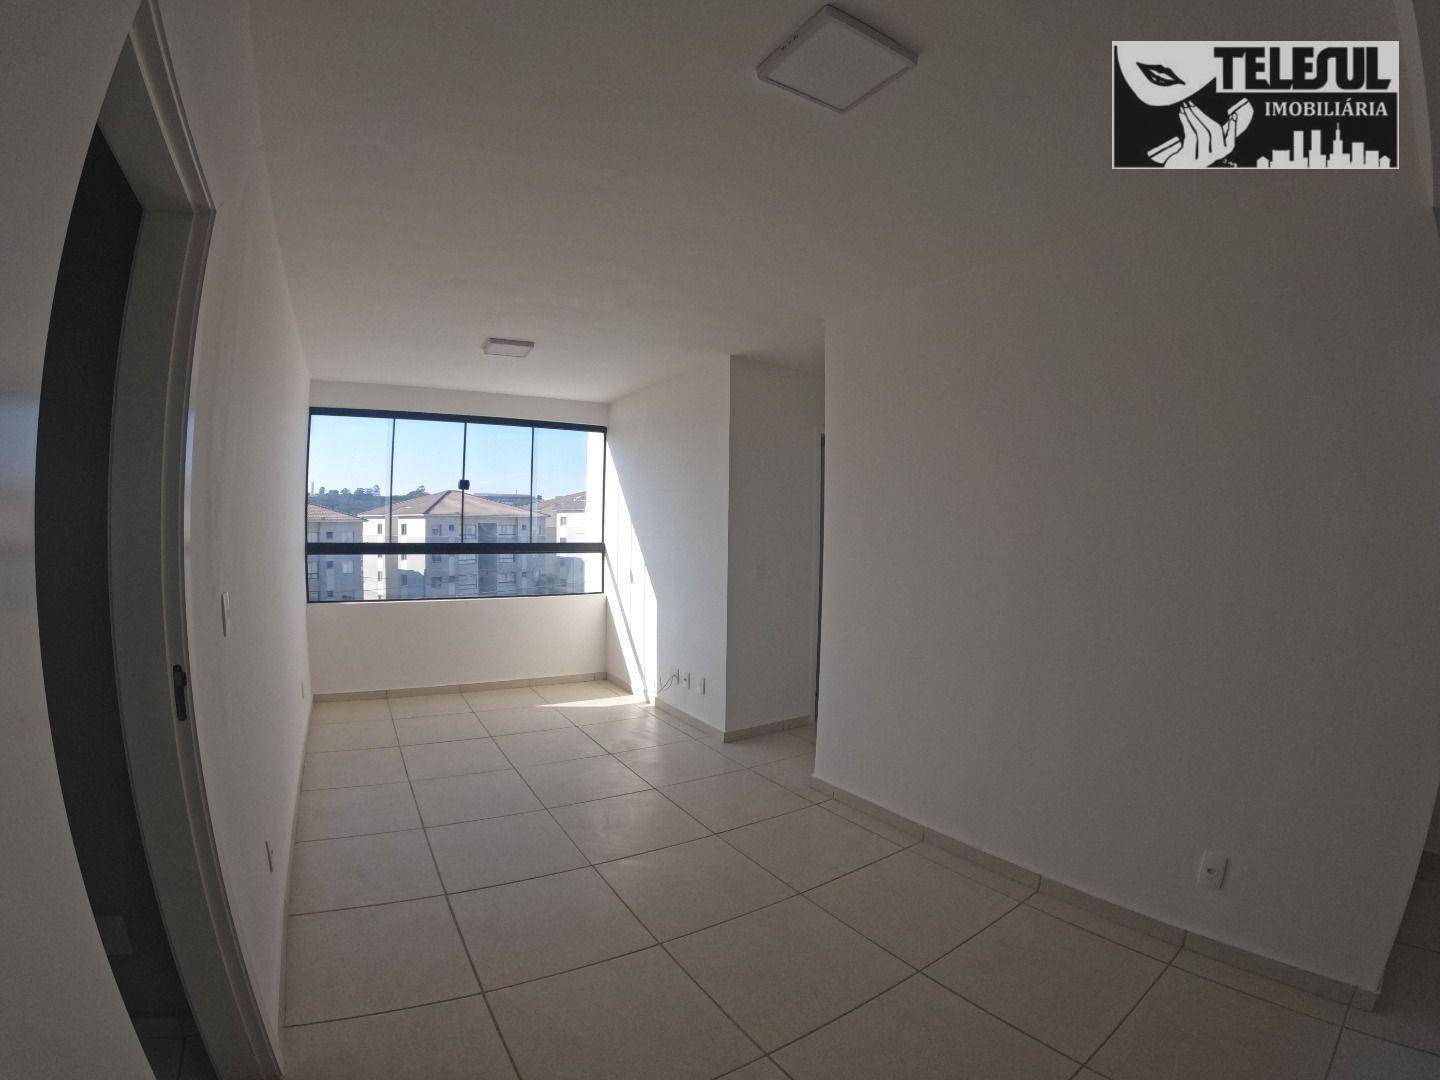 Apartamento, 2 quartos, 313 m² - Foto 2